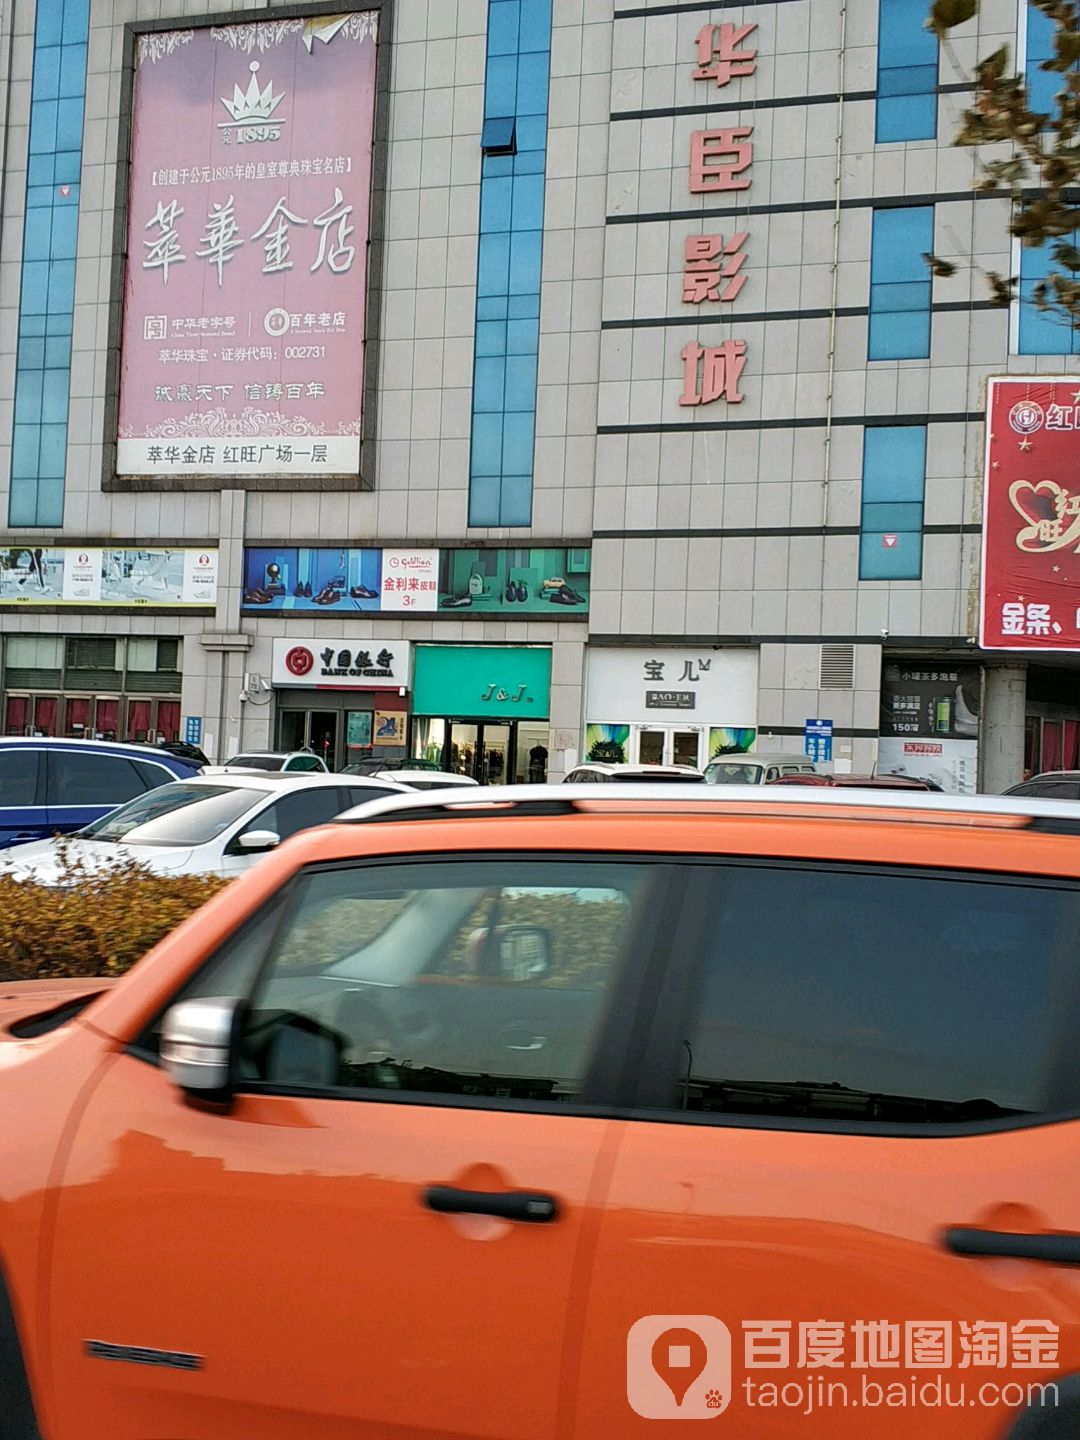 中國銀行24小時自助銀行(平安大街店)